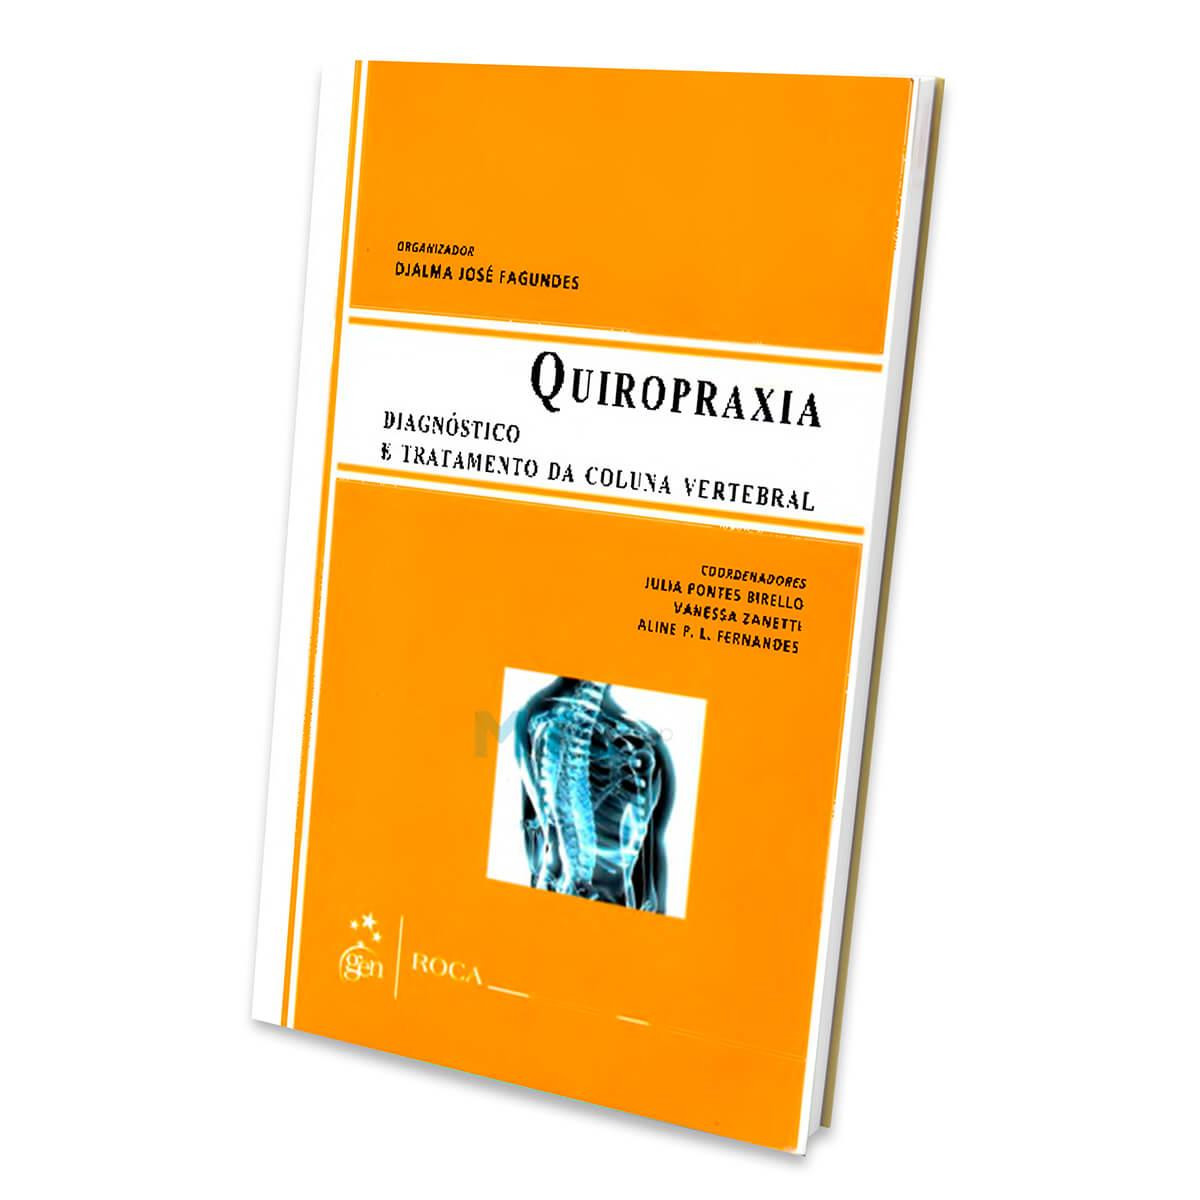 Quiropraxia - Diagnóstico e tratamento da coluna vertebral - Ed Roca